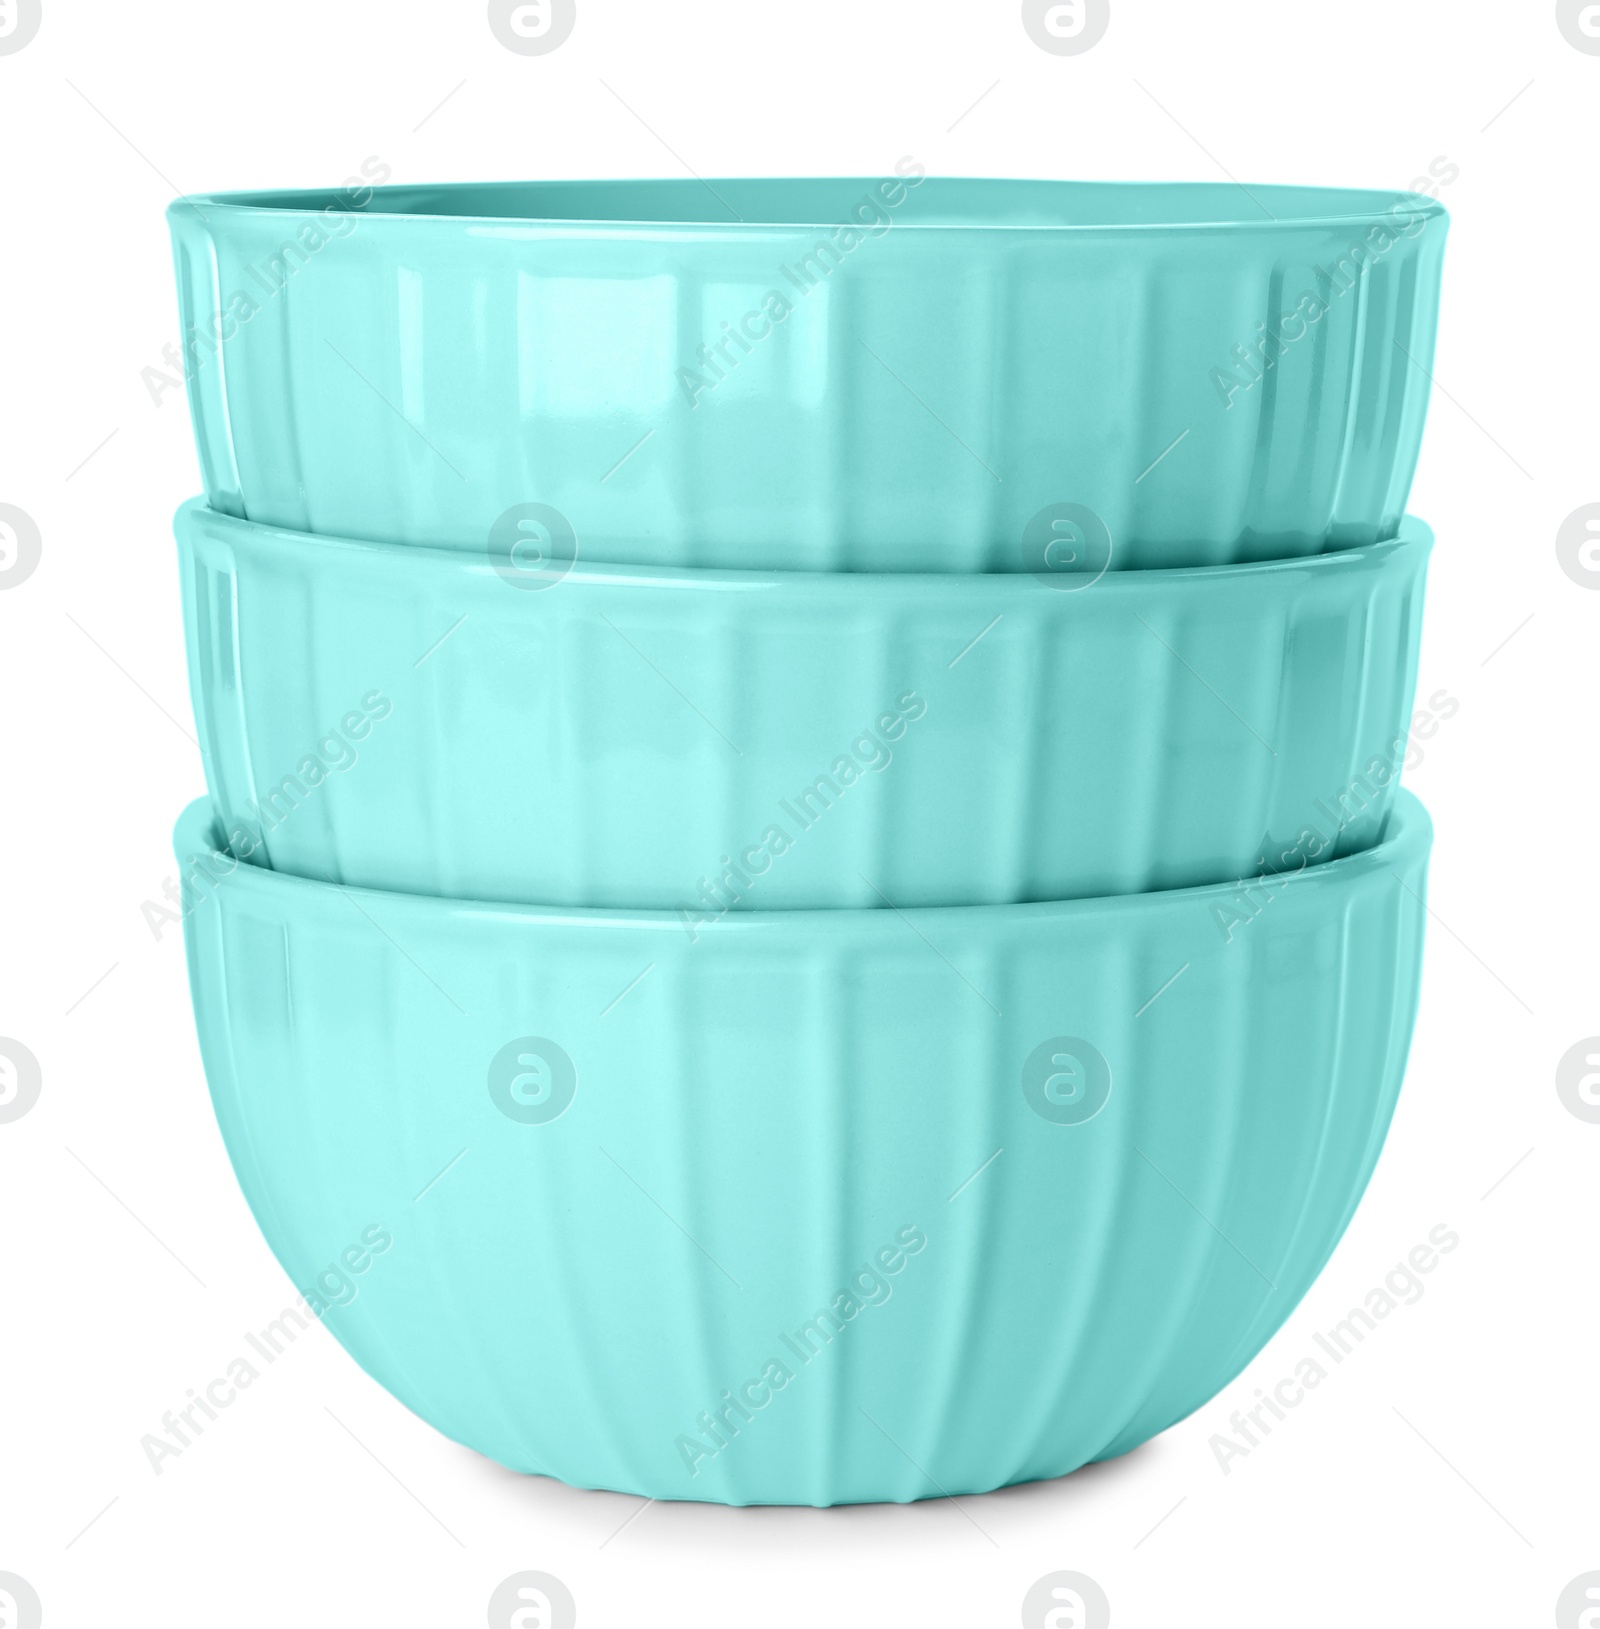 Photo of Elegant new turquoise bowls on white background